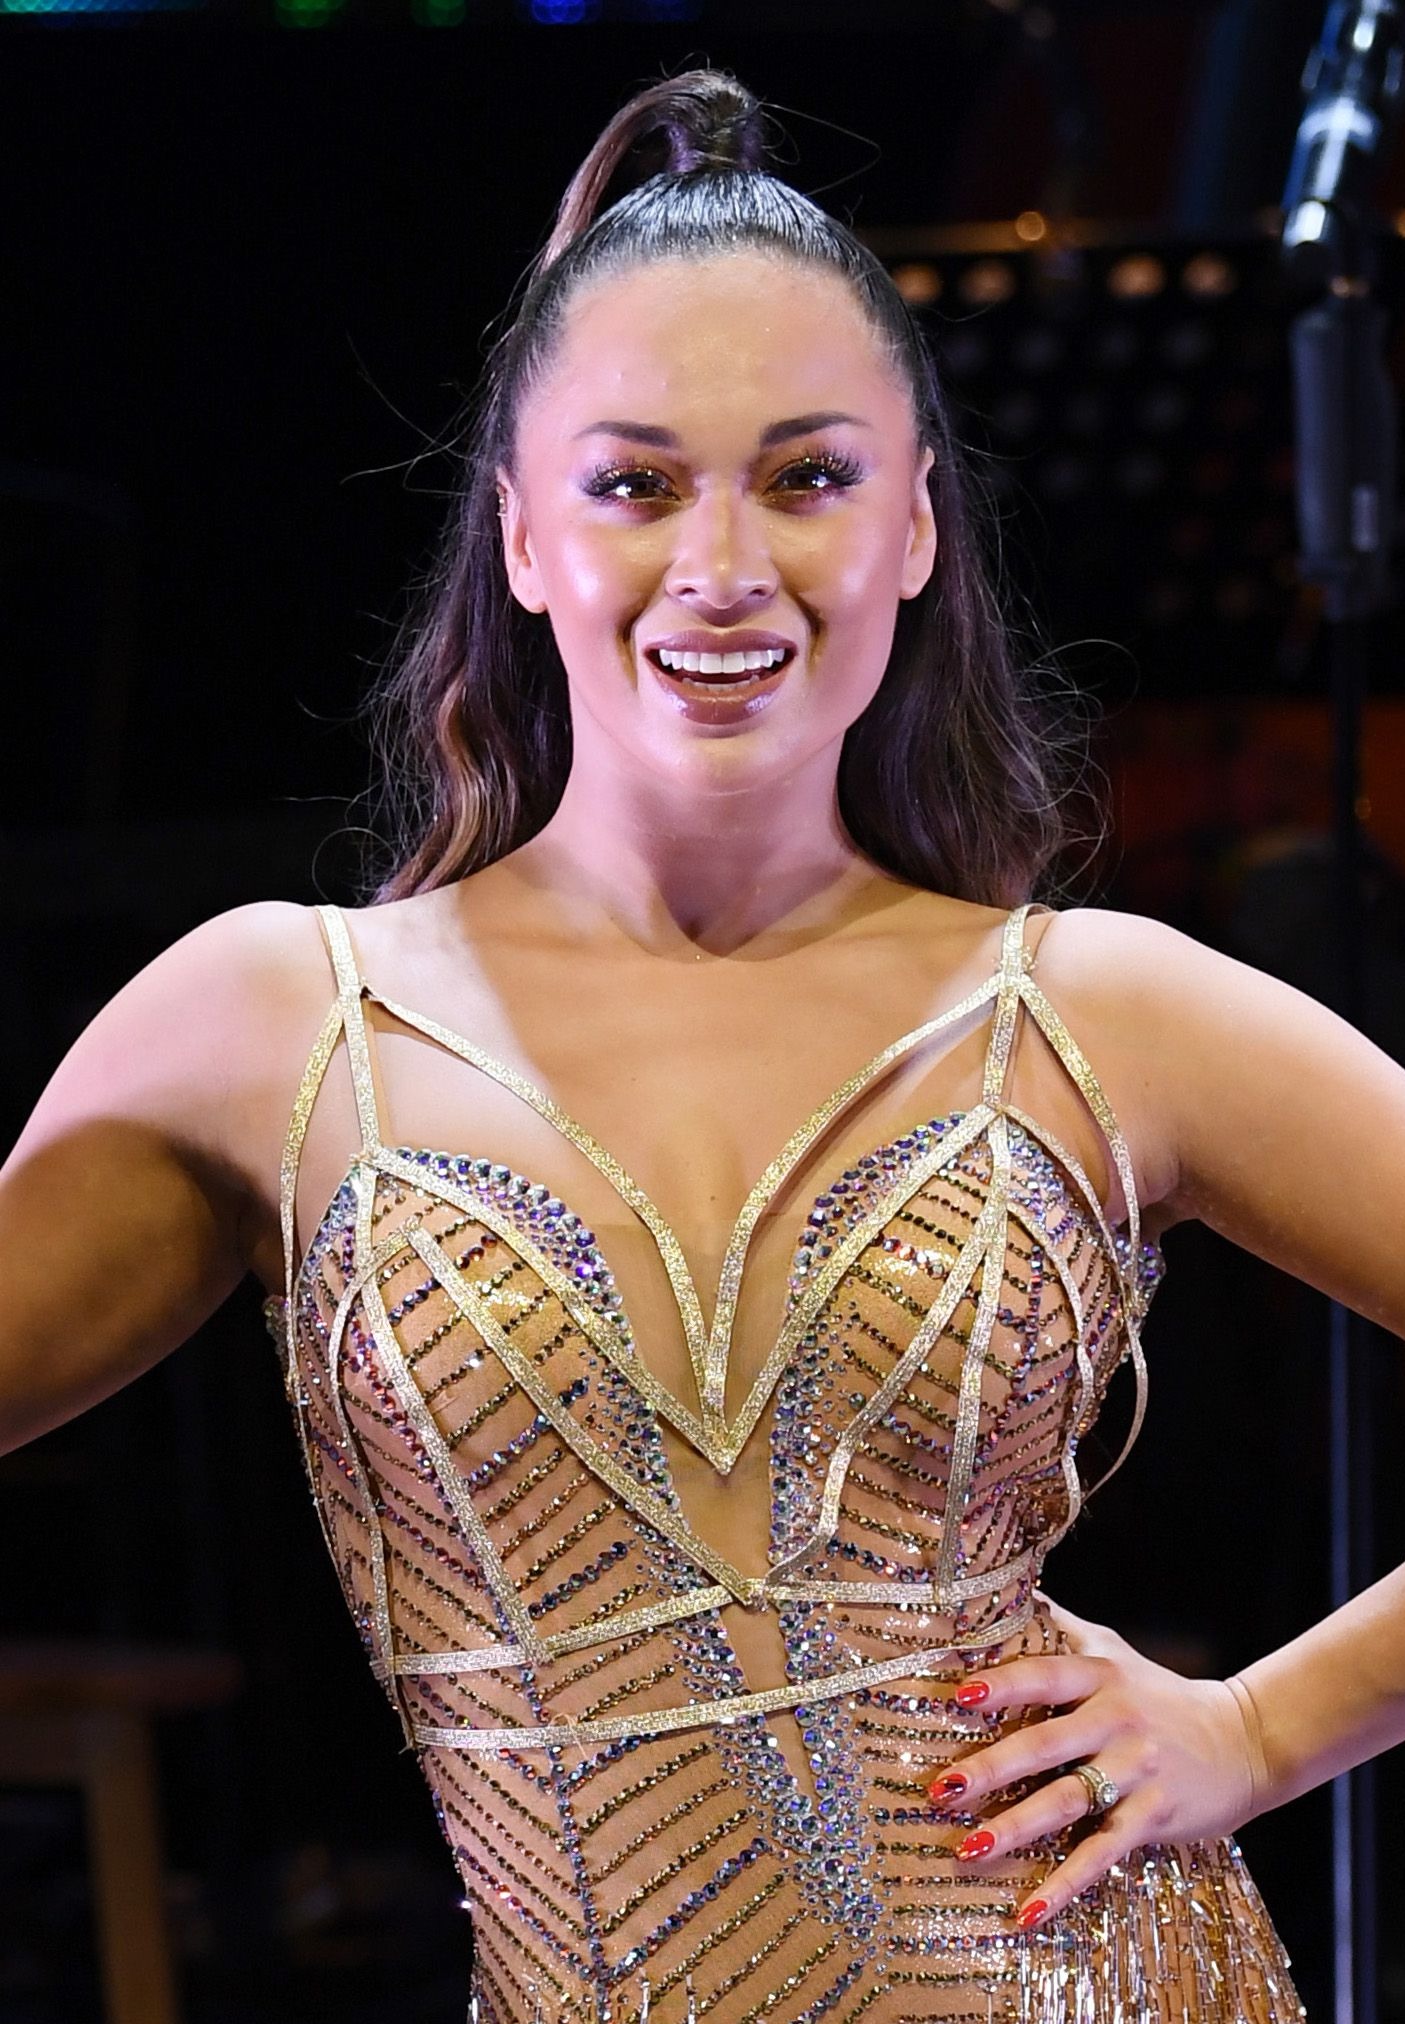 Die Strictly Come Dancing-Stars Anton Du Beke, Katya Jones und Graziano Di Prima werden ihre Tanzschuhe gegen Schutzhelme tauschen, wenn sie der Show beitreten